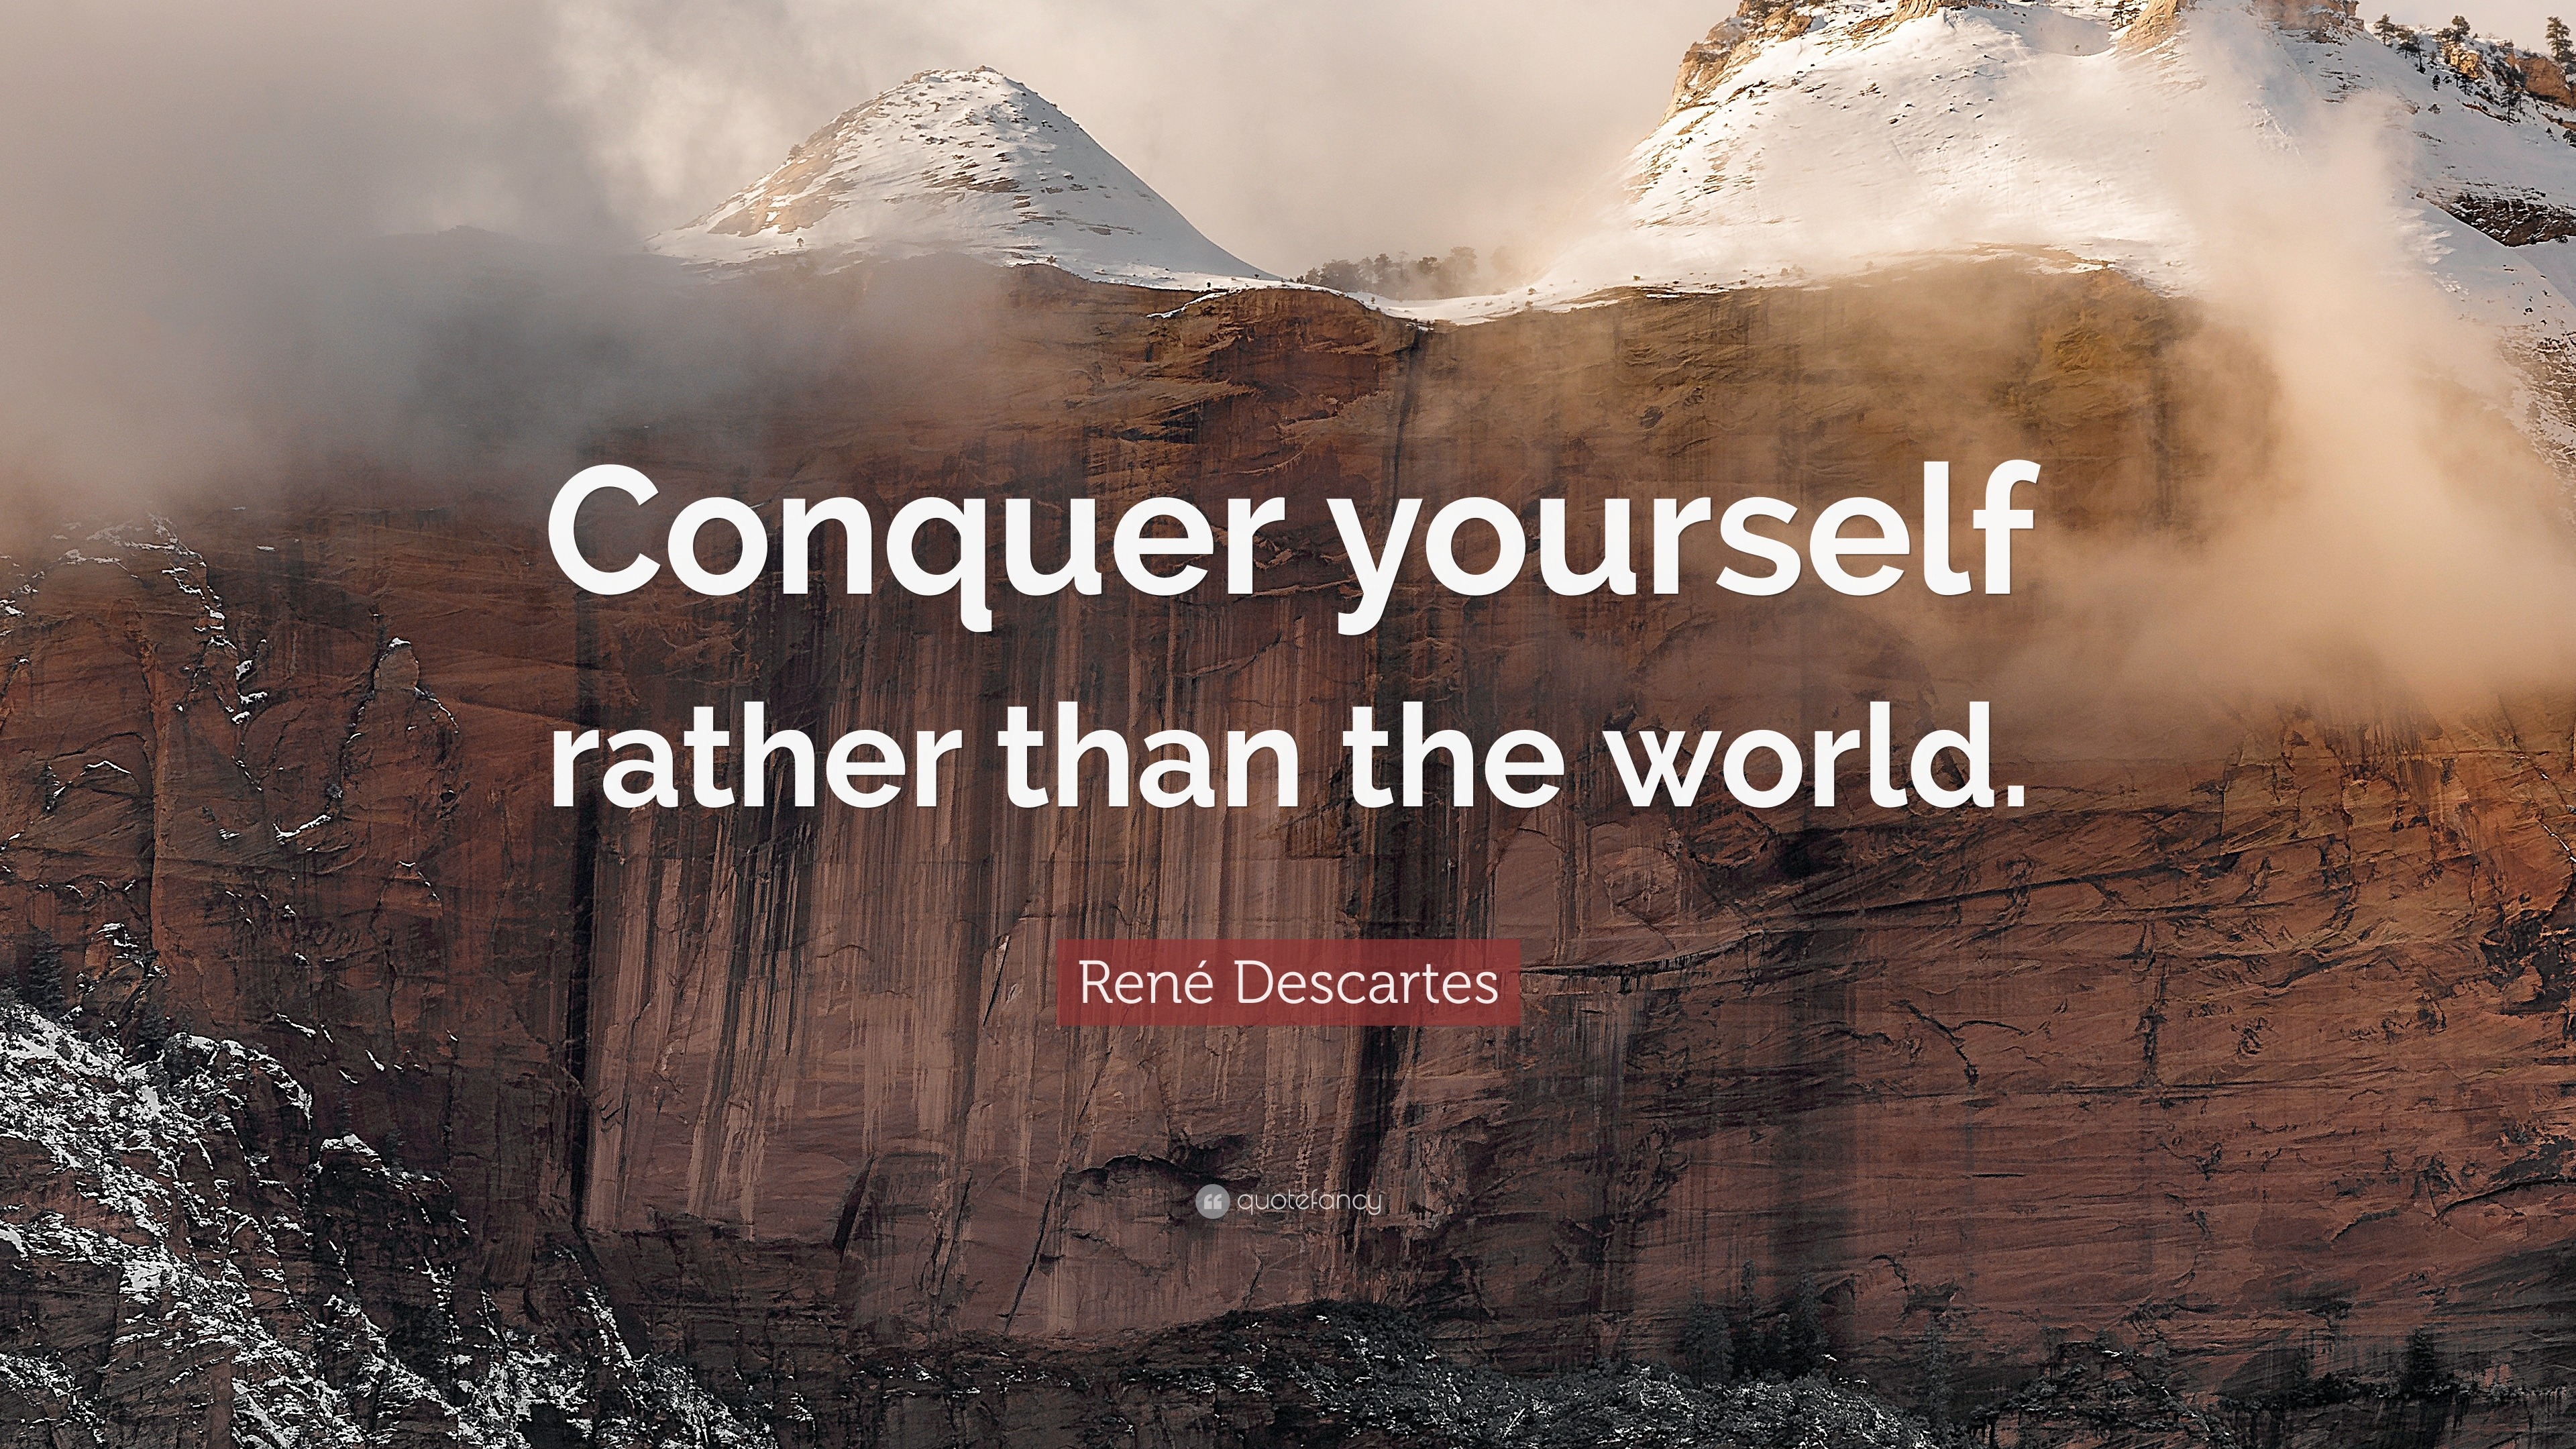 René Descartes Quote: 